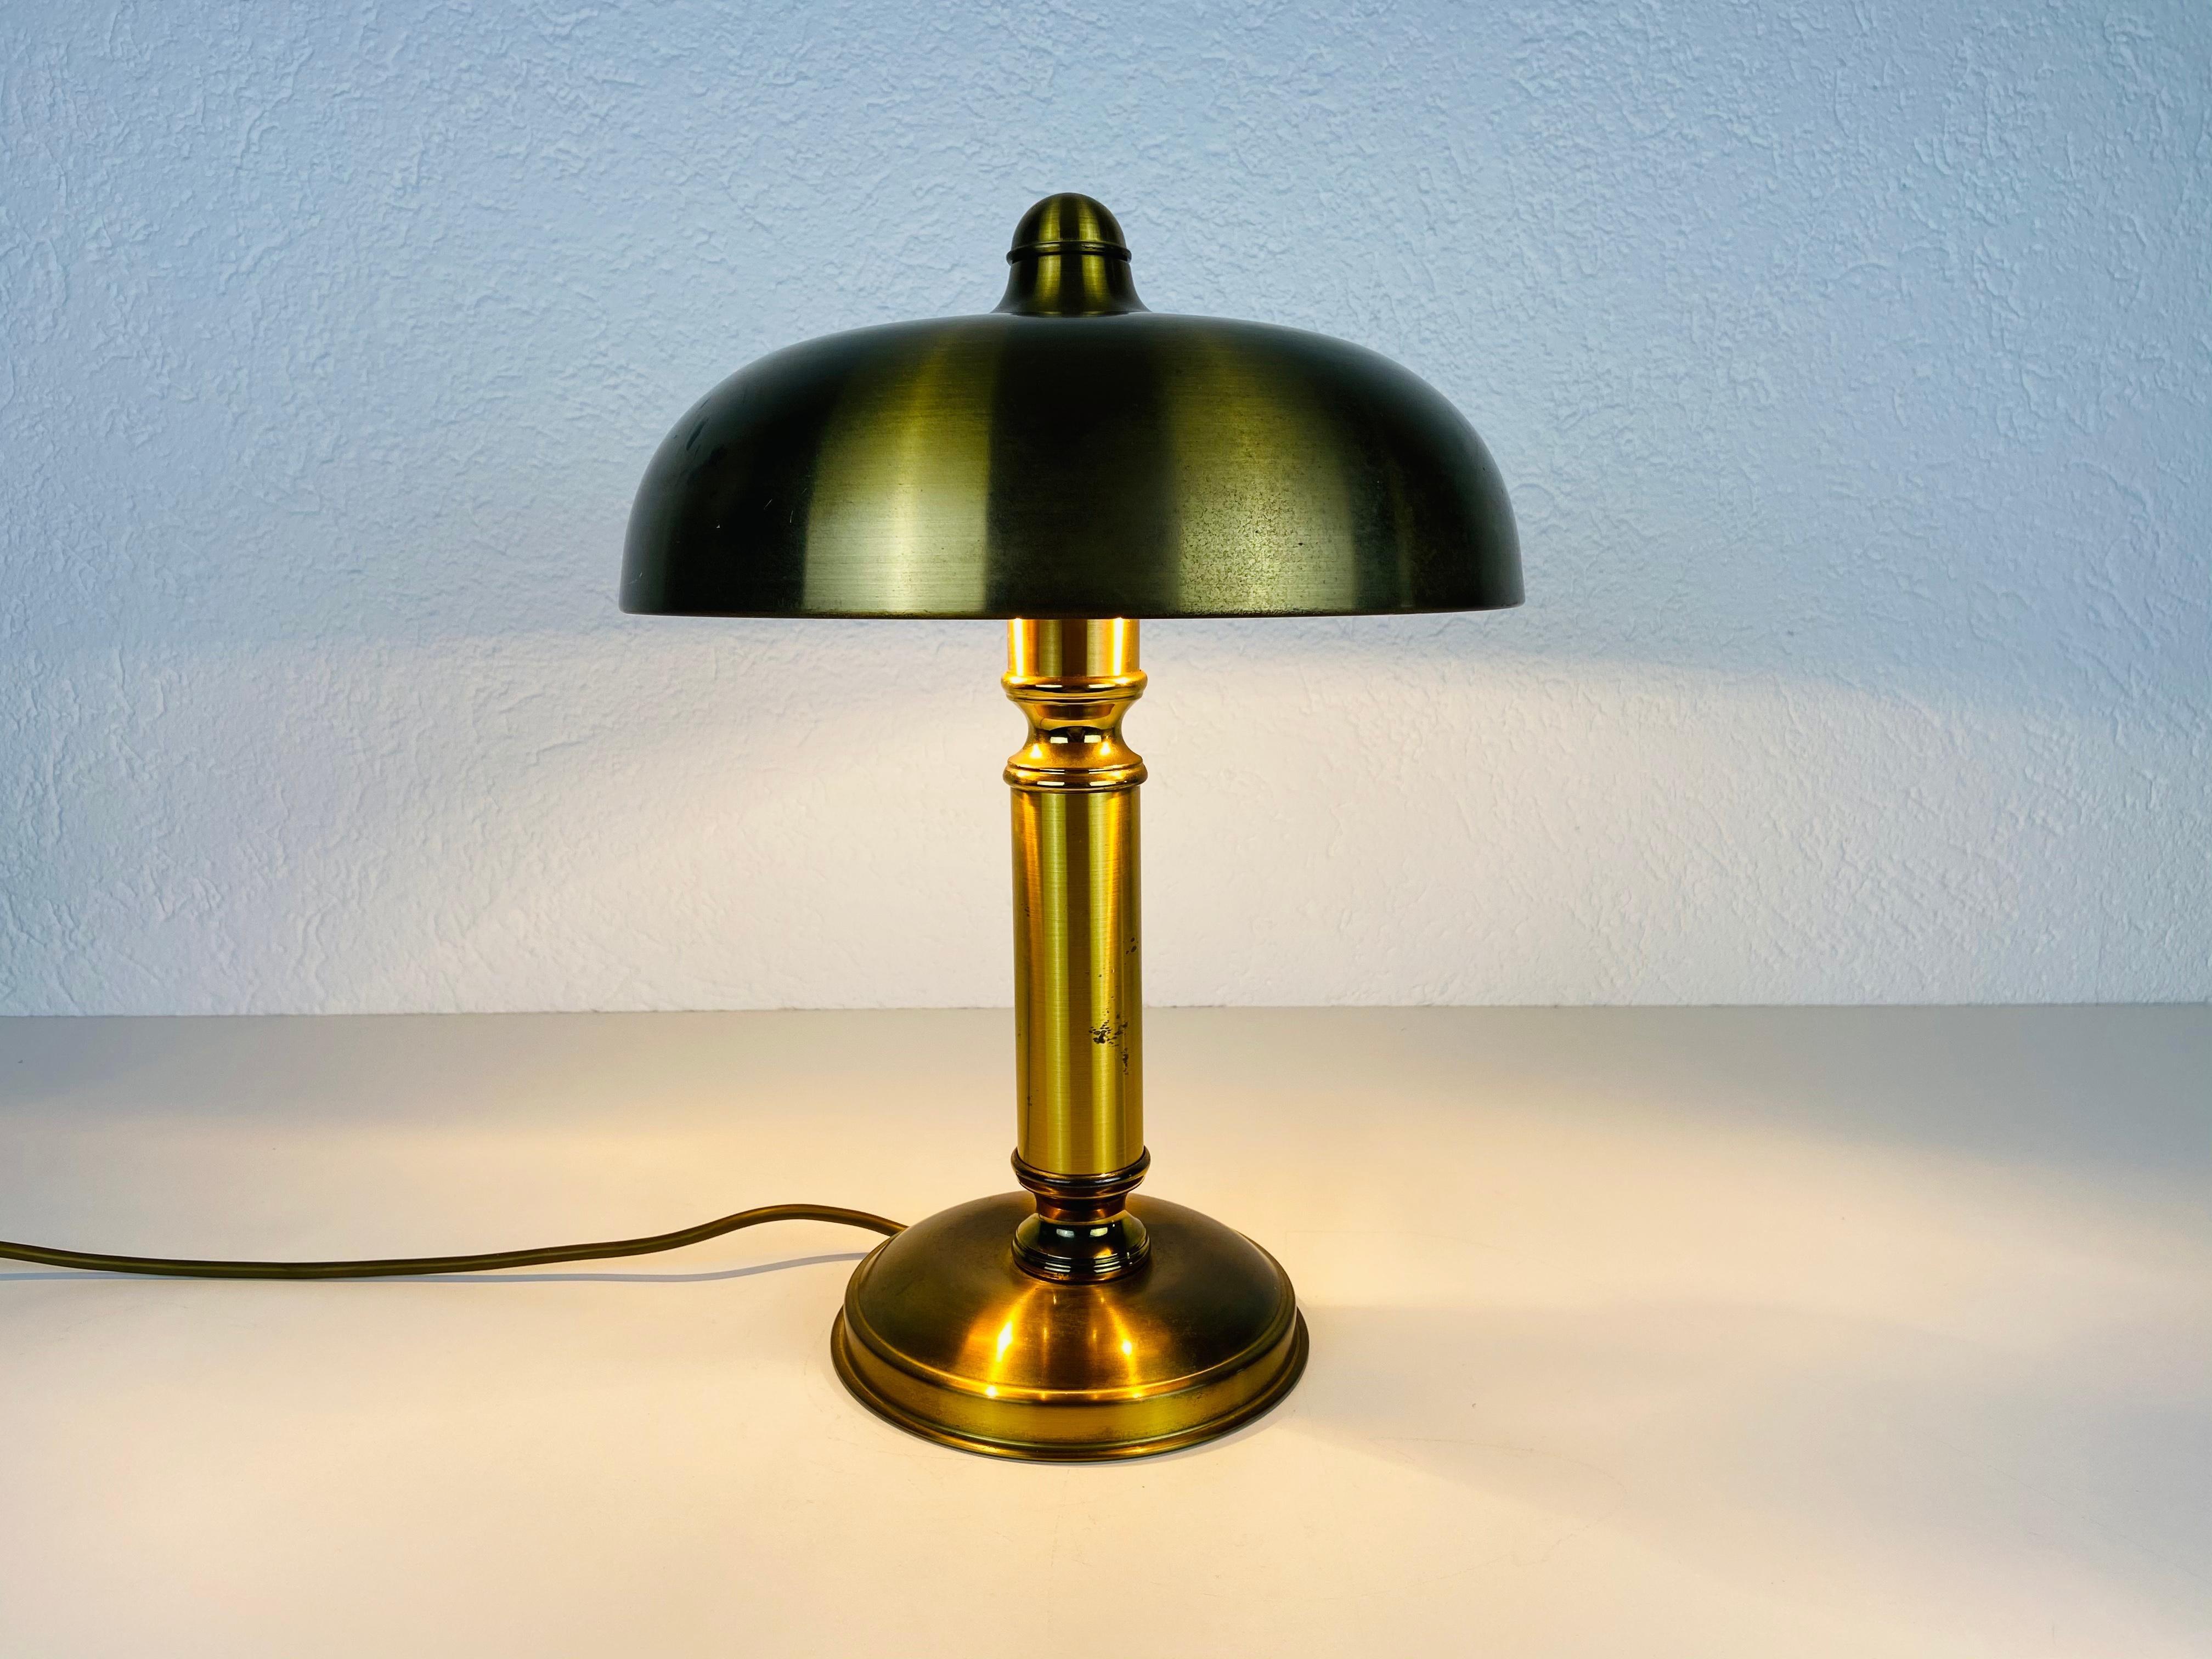 Une des deux lampes de table fabriquées en Allemagne dans les années 1960.

La lampe nécessite une ampoule E27 (US E26). Fonctionne avec les deux 220V/120V. Bon état vintage.

Expédition express gratuite dans le monde entier.